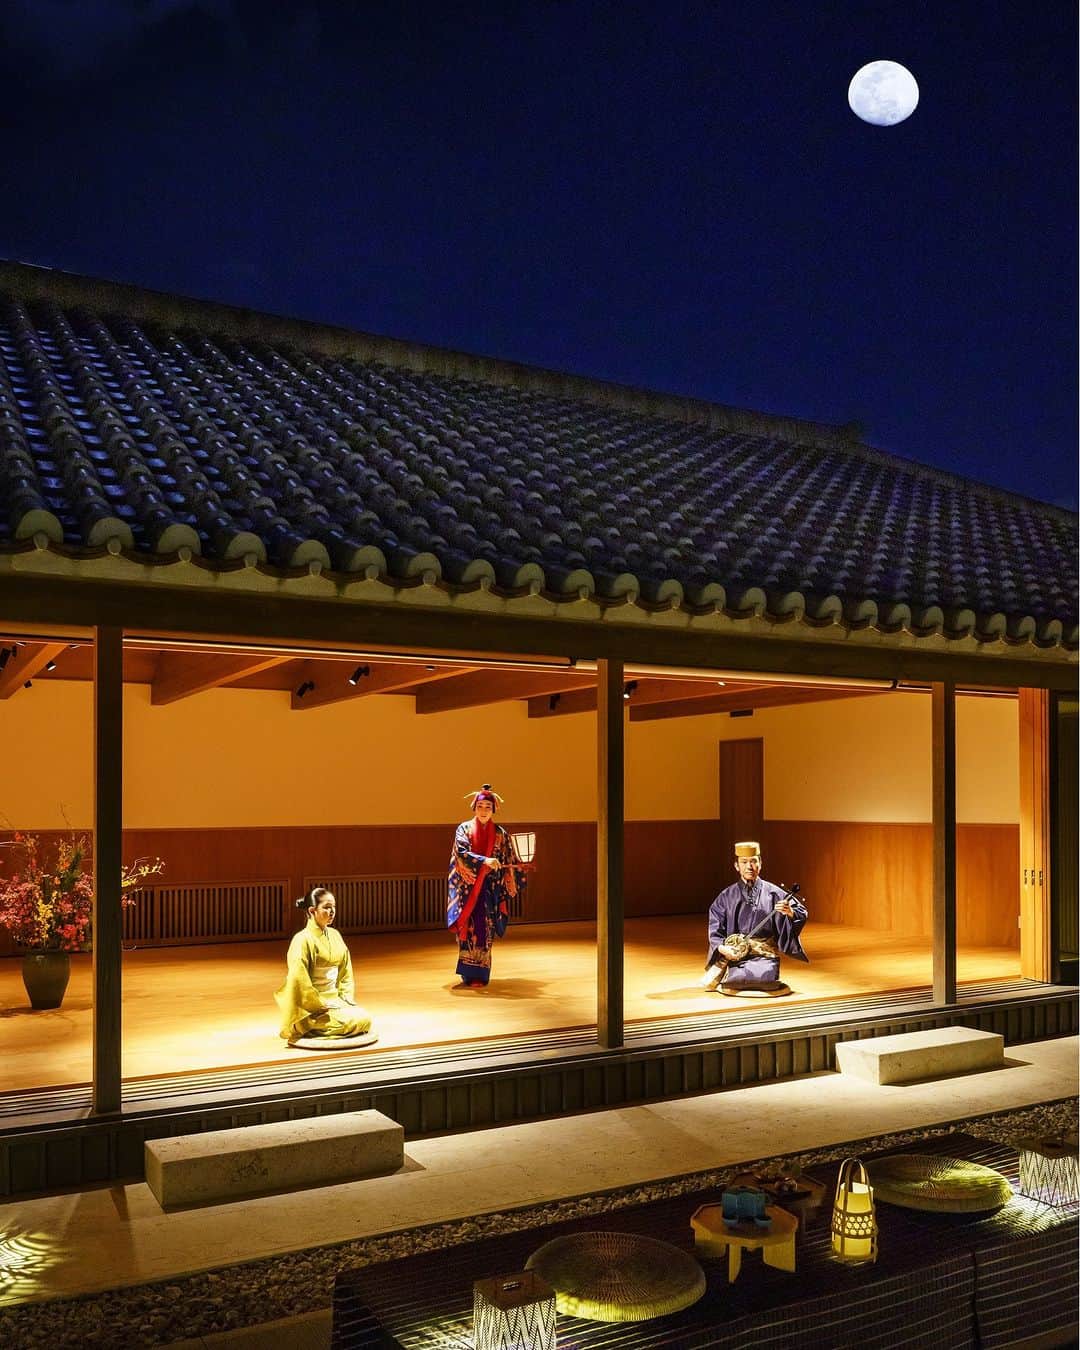 星野リゾートのインスタグラム：「【秋の夜長を優雅に過ごす「琉球秋夜の調」】 📍星のや沖縄 - HOSHINOYA Okinawa  星のや沖縄内の「道場」とその庭を貸し切りにしたプライベートな空間で、月明りの下、ユネスコ無形文化遺産の宮廷芸能「組踊」を鑑賞します。  組踊は、琉球王朝時代に中国皇帝の使者をもてなす儀式「重陽の宴」で初めて披露された、琉球文化を代表する伝統芸能。その歴史に倣って旧暦9月9日頃の月明かりが美しい期間に開催します。  心地よい海風を感じながら、甘味や泡盛とともに優雅で特別な時間をお過ごしください。  #HoshinoResorts #星野リゾート #hoshinoya #星のや #リゾートホテル #ご褒美旅行 #hoshinoyaOkinawa #星のや沖縄 #沖縄ホテル #沖縄リゾート #沖縄旅行 #okinawatrip #okinawaresort #オーシャンビュー #組踊」